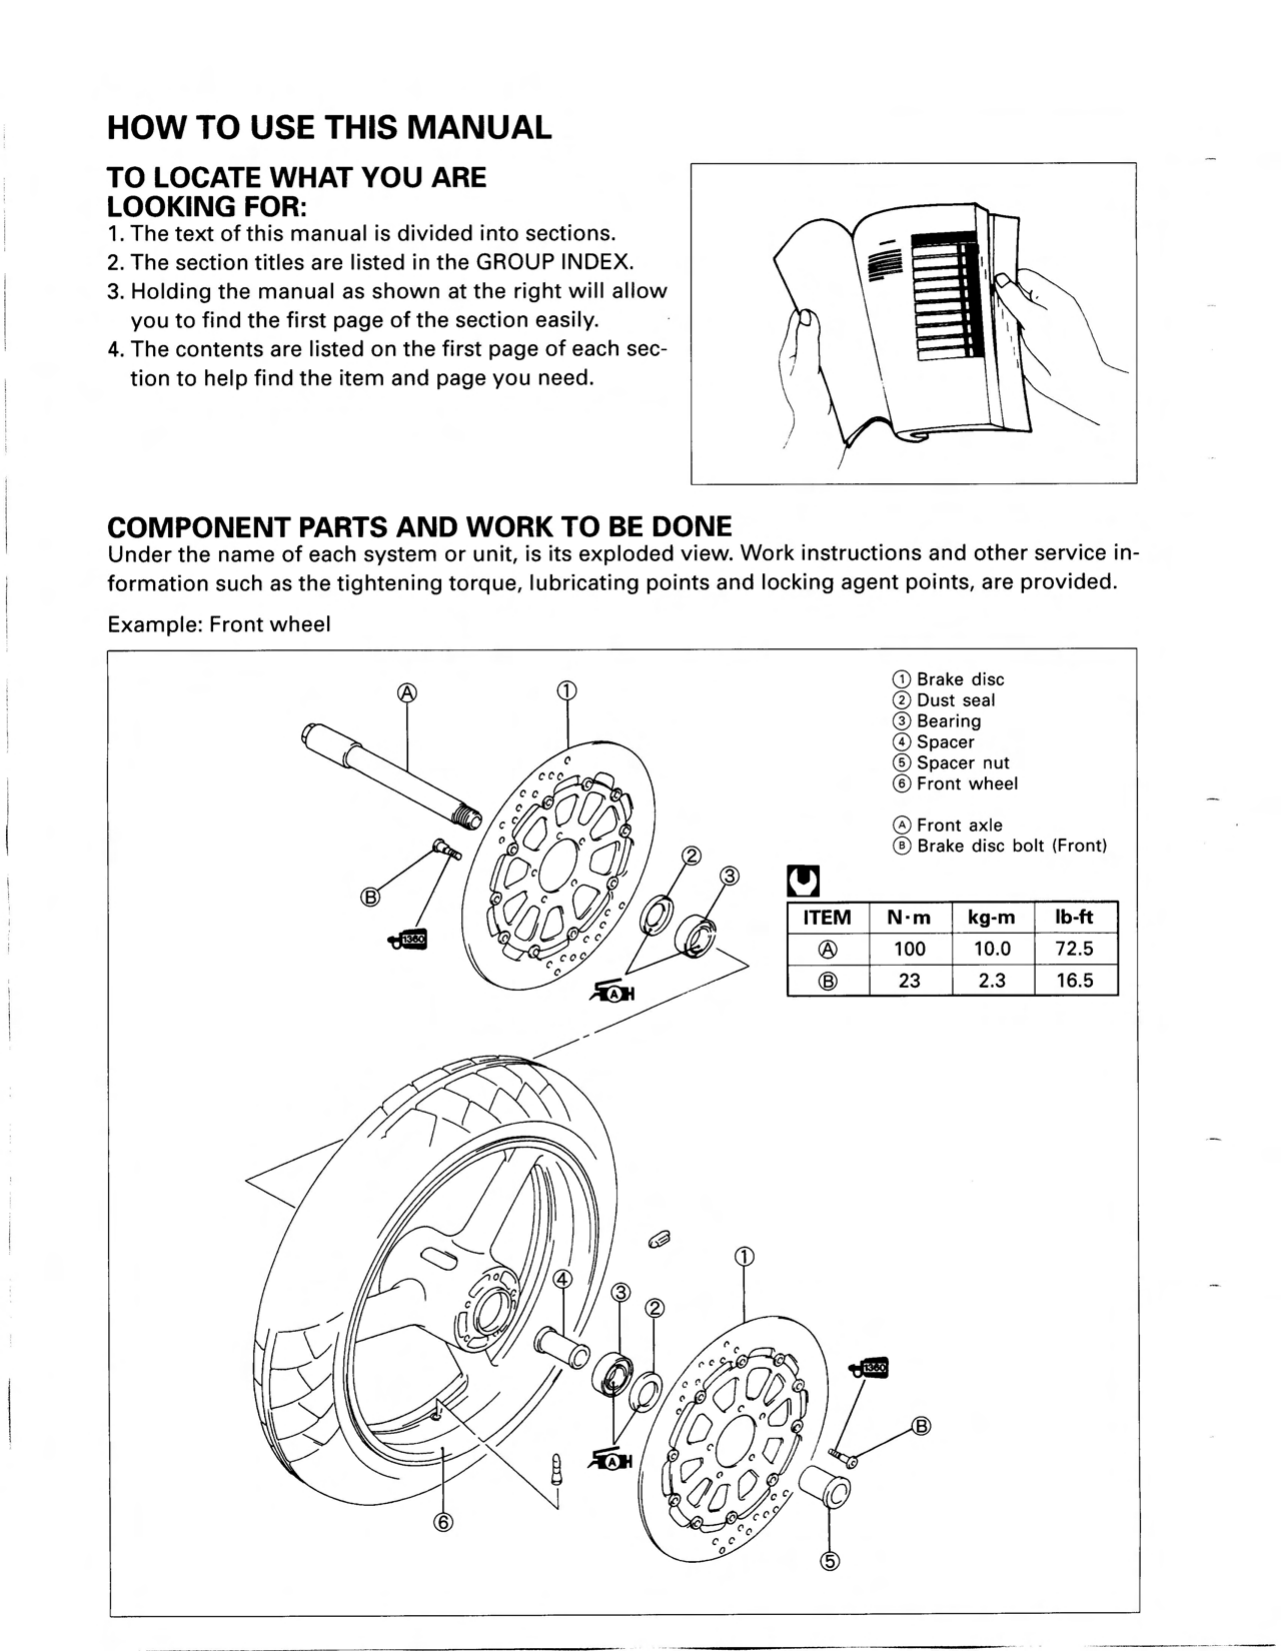 1997-2001 Suzuki TL1000s manual repair and service manual Preview image 3